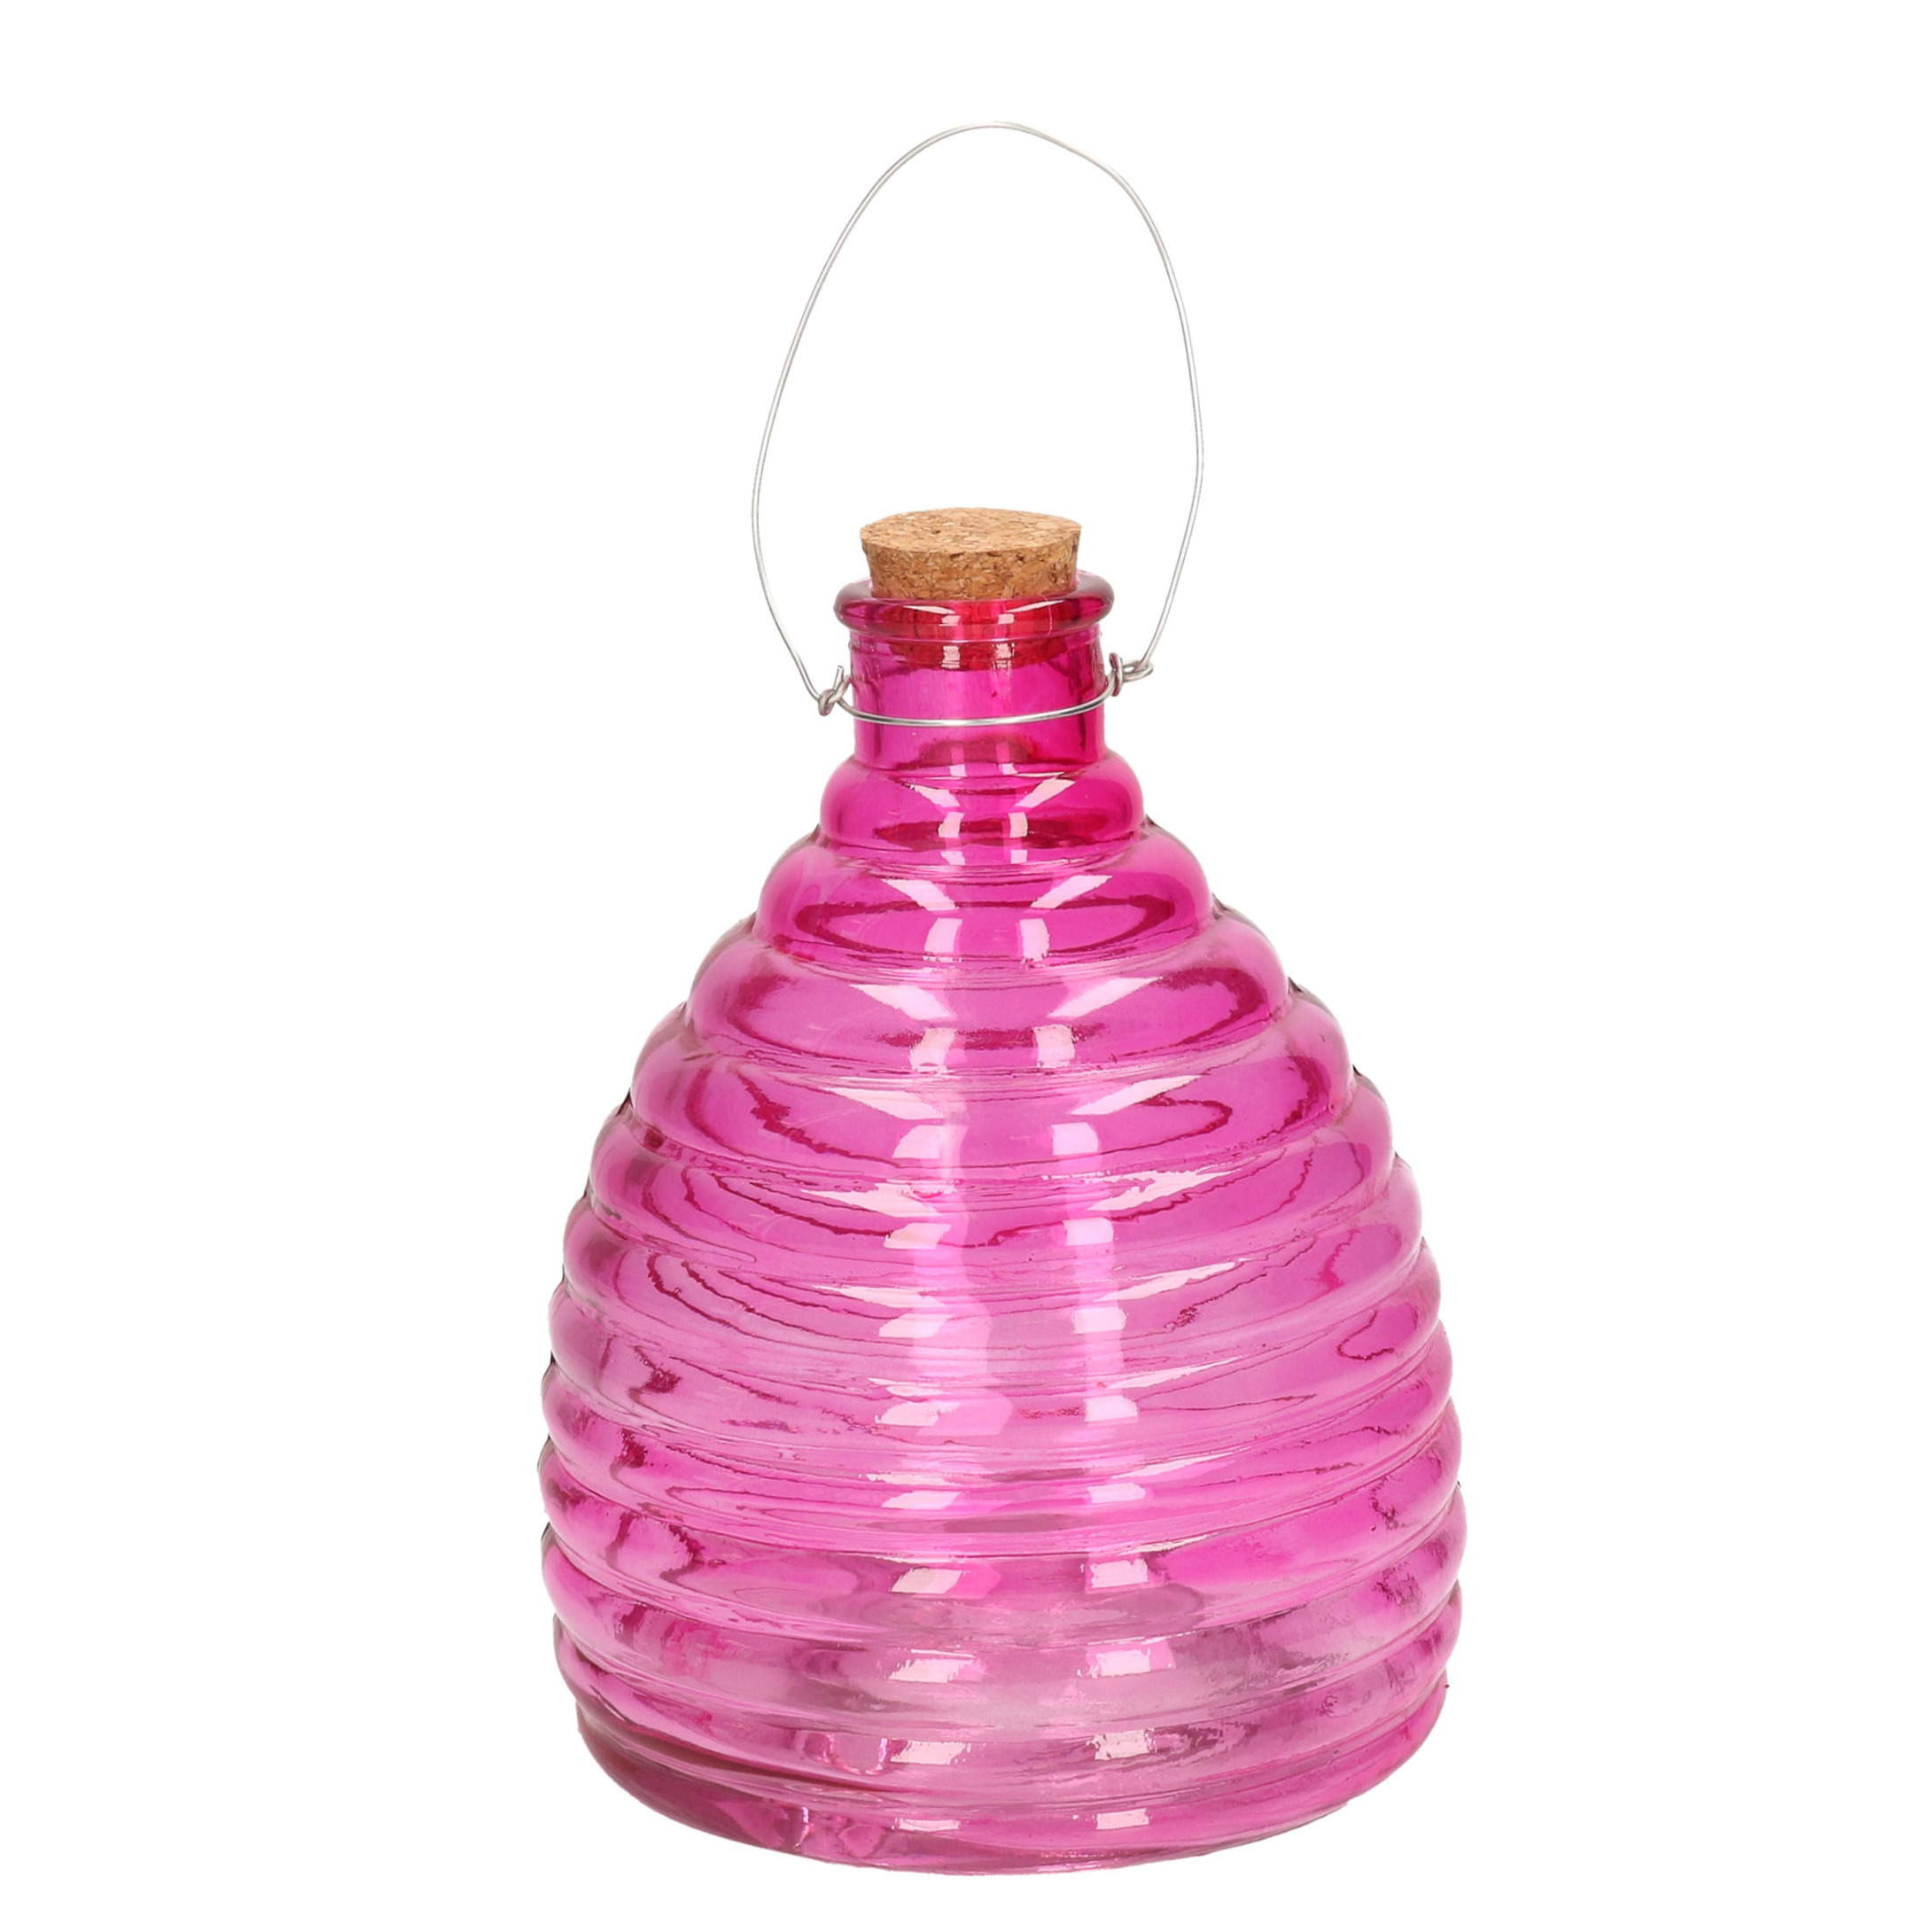 Wespenvanger-wespenval roze van glas 21 cm